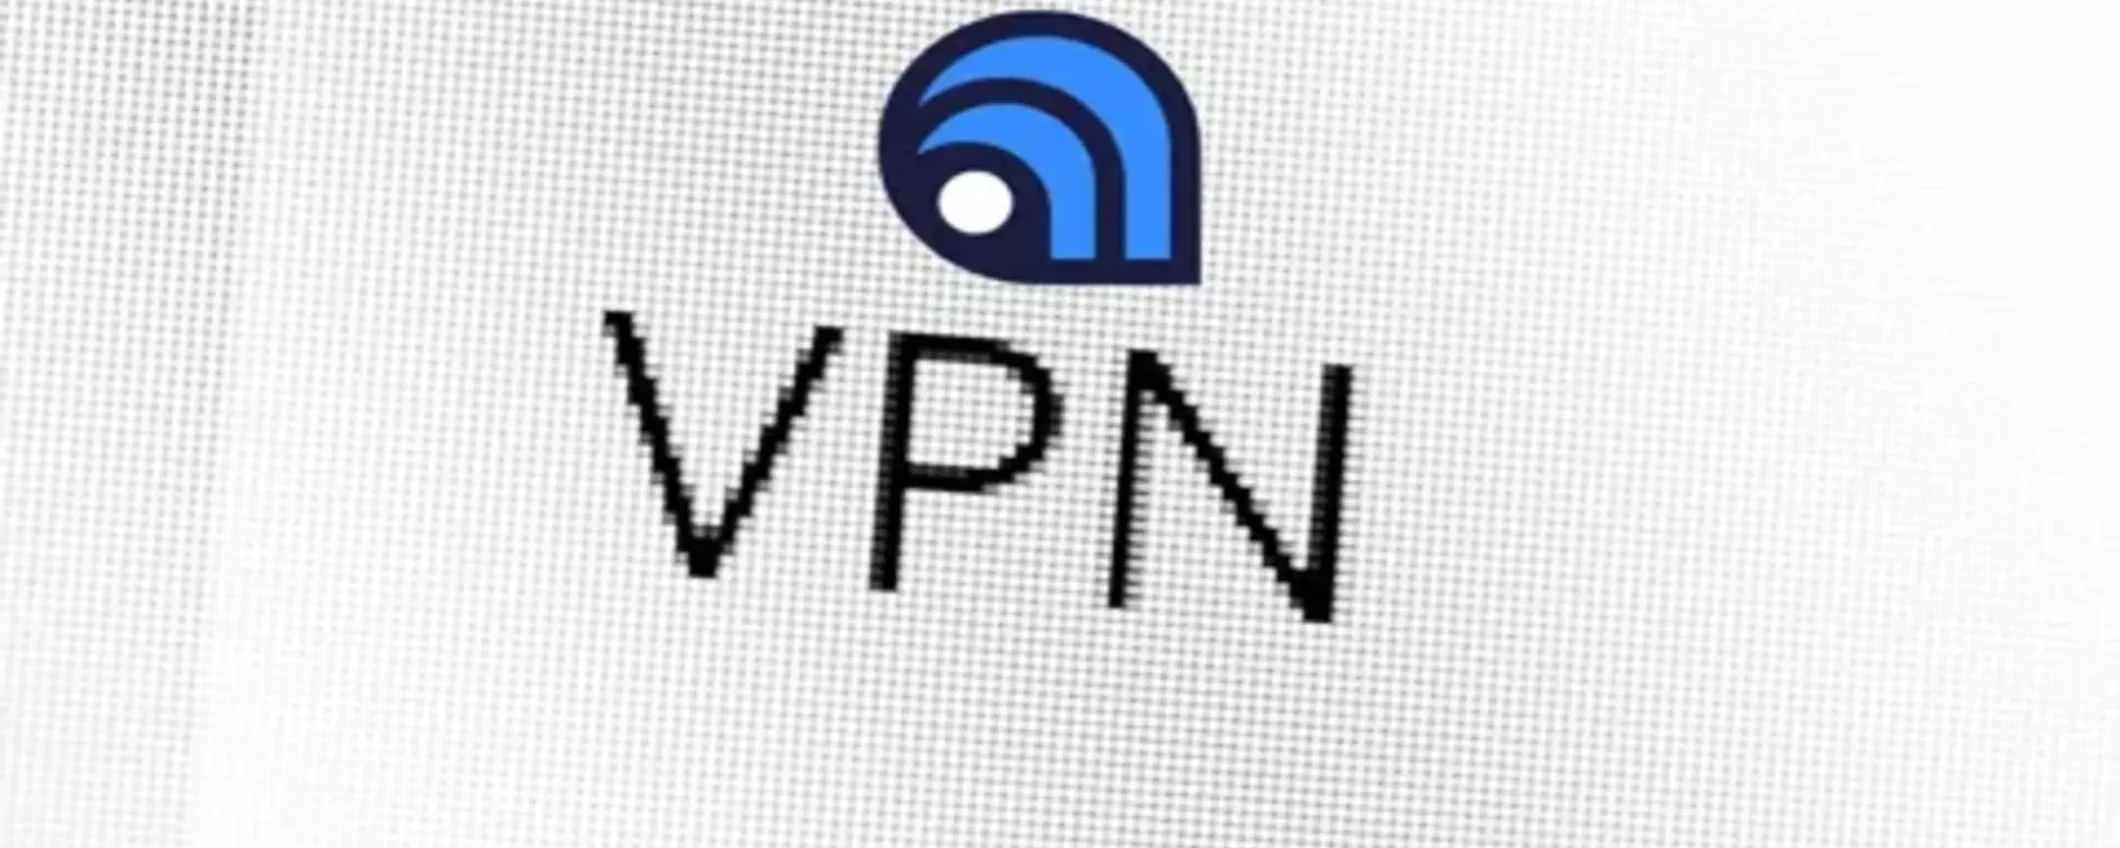 Atlas VPN chiude i battenti, si migra a NordVPN